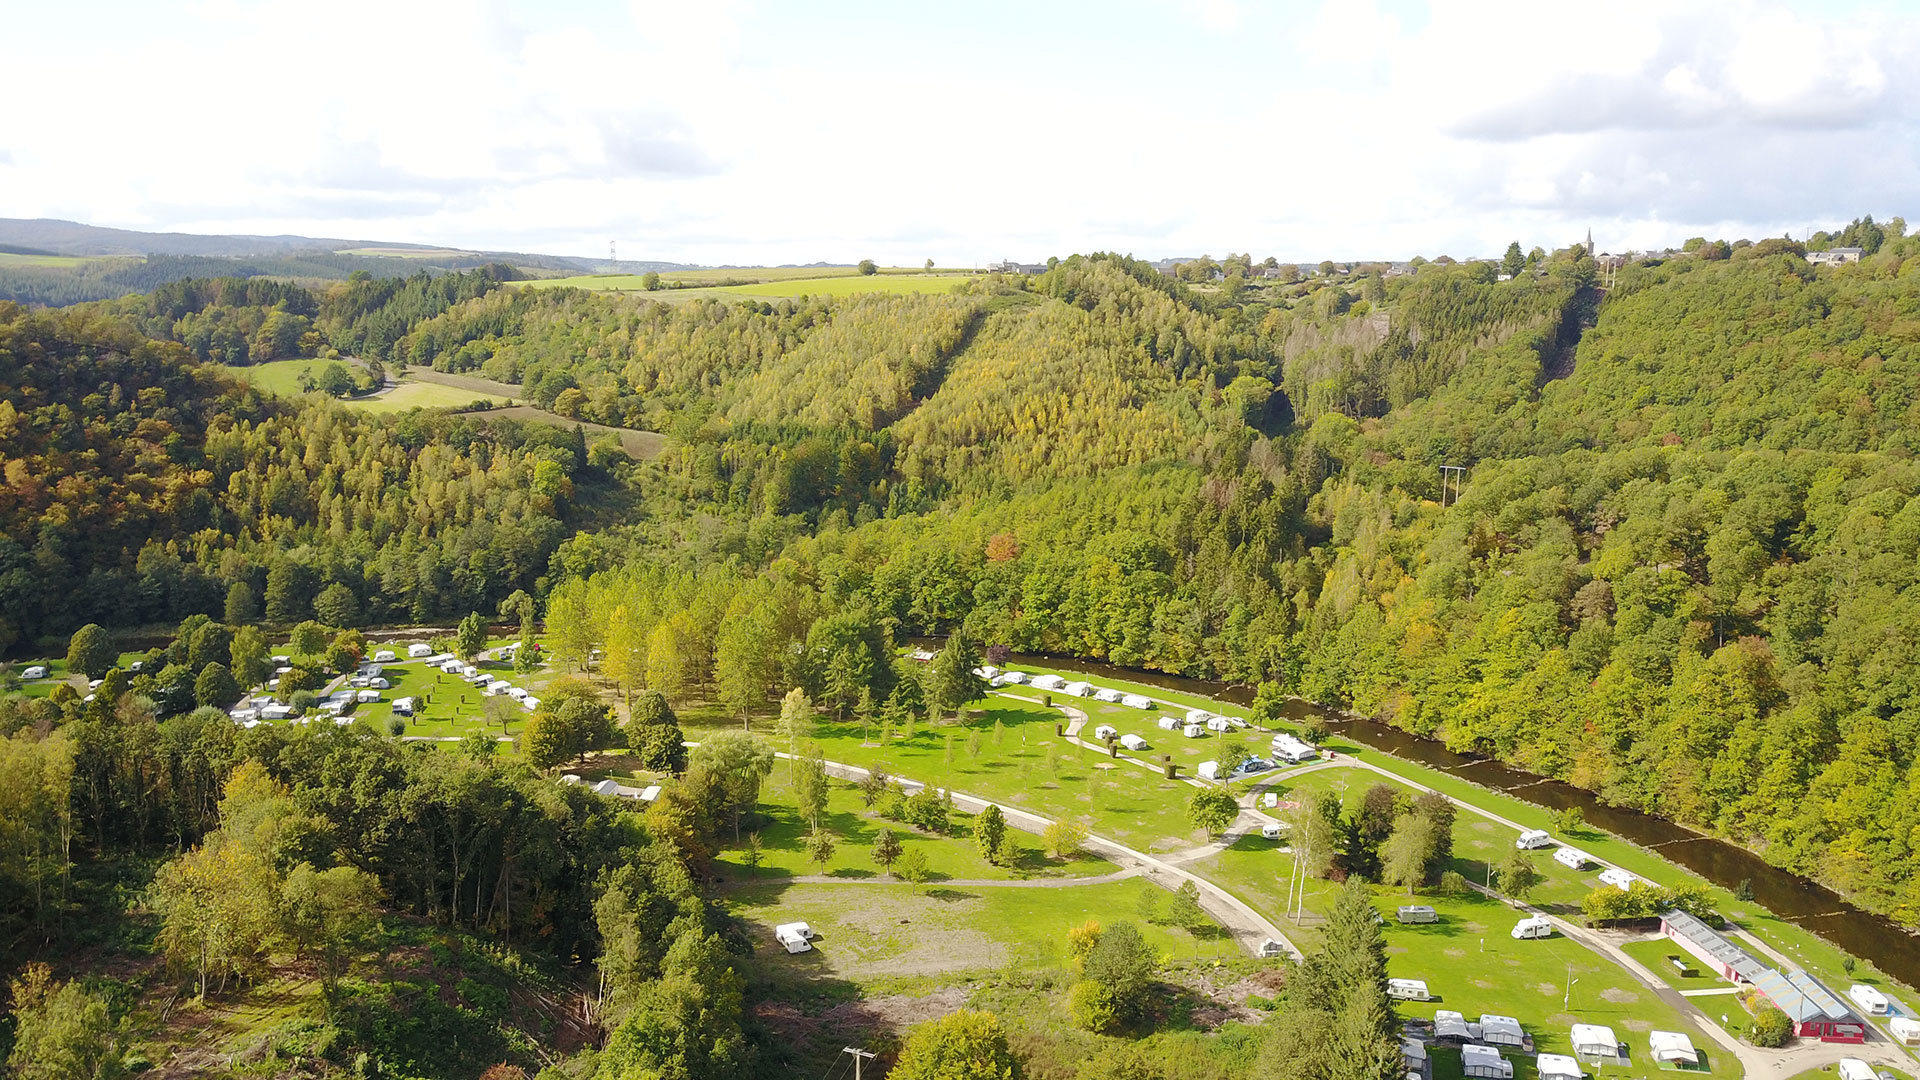 Camping - Benelux - La Roche-en-Ardenne